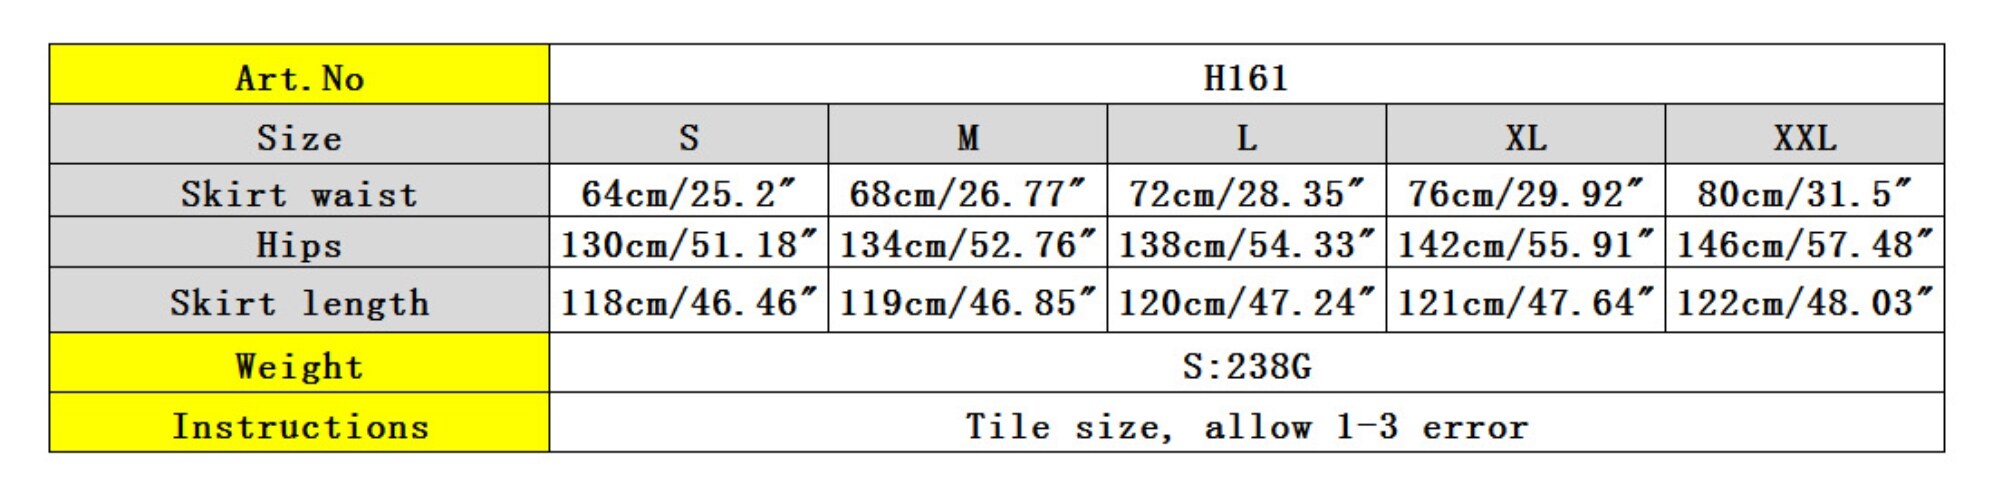 H00e1b80d0cb24ec192cb693b1b9b0562L.jpg?width=1104&height=278&hash=1382